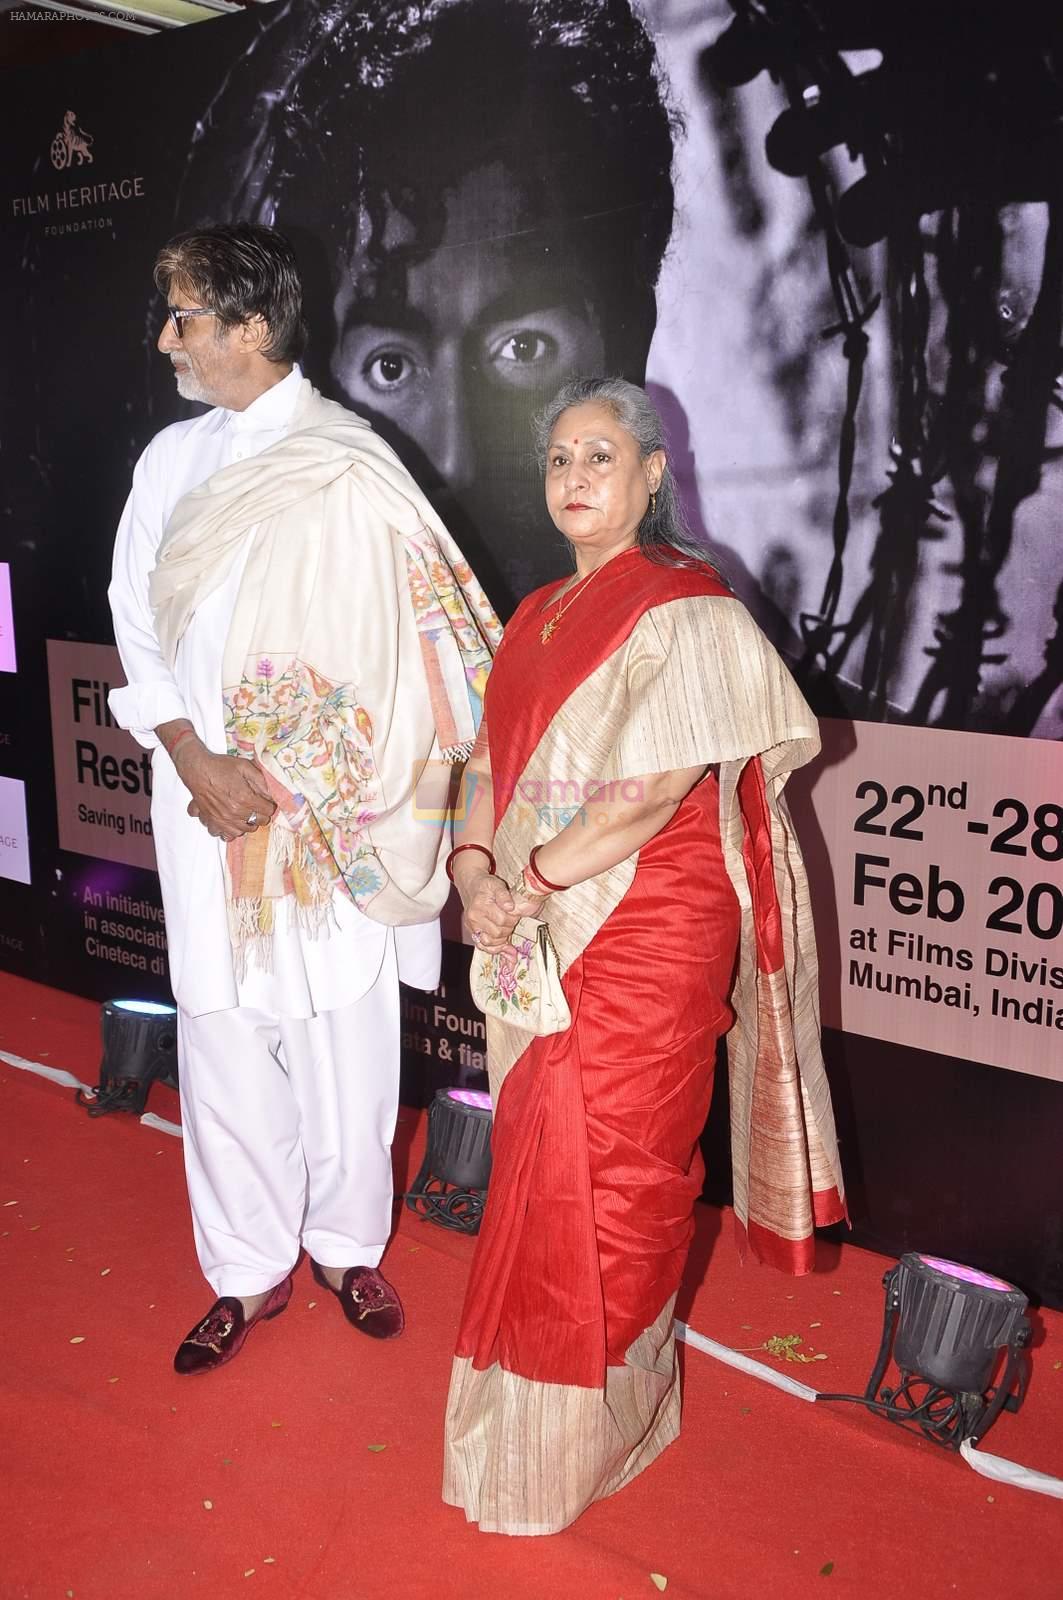 Amitabh Bachchan, Jaya Bachchan attend film heritage workshop in Liberty on 22nd Feb 2015